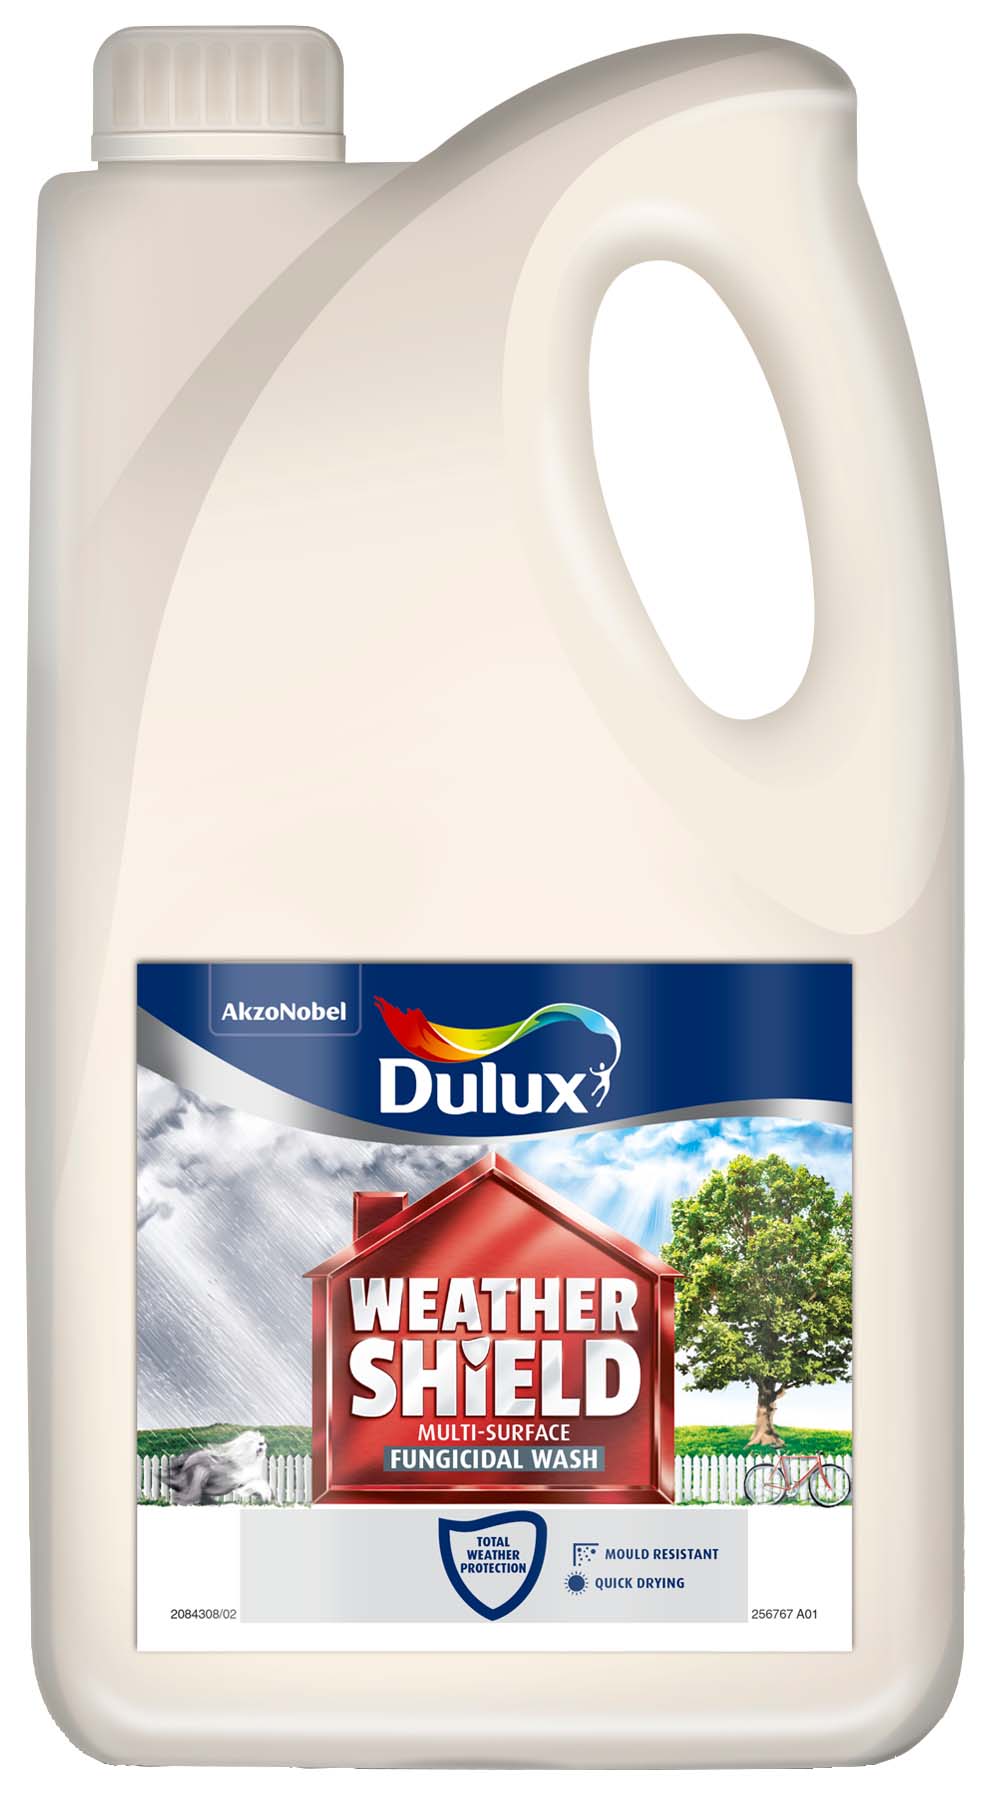 Image of Dulux Weathershield Multi Surface Fungicidal Wash - 2.5L